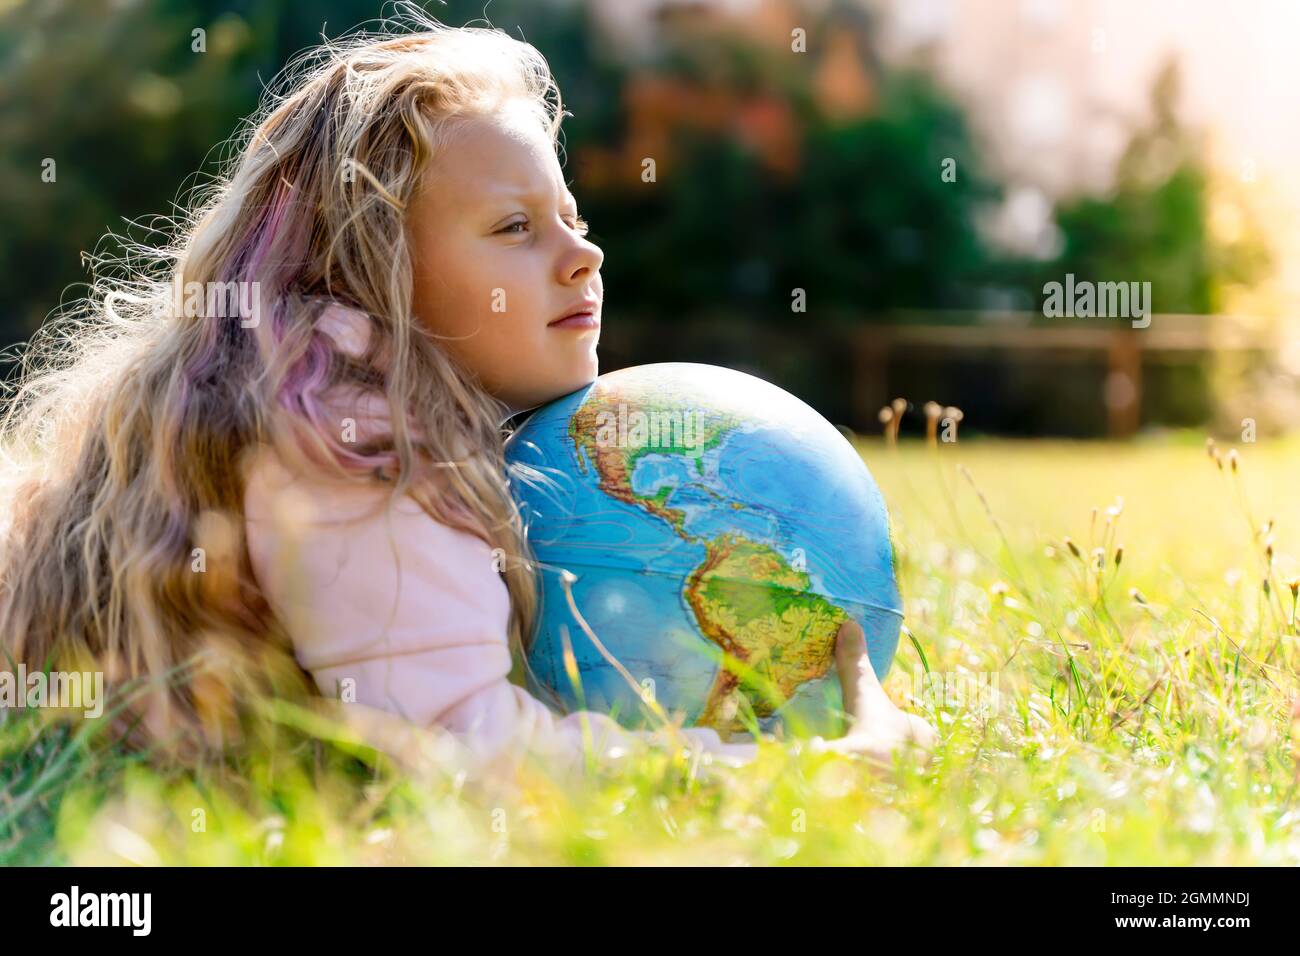 Kind mit Erdkugel. Porträt eines blonden europäischen Mädchens der Grundschule mit einem pädagogischen Globus des Planeten Erde in der Natur bei sonnigem Wetter. Konzept für Studium, Bildung, Naturschutz und Umweltschutz. Hochwertige Fotos Stockfoto